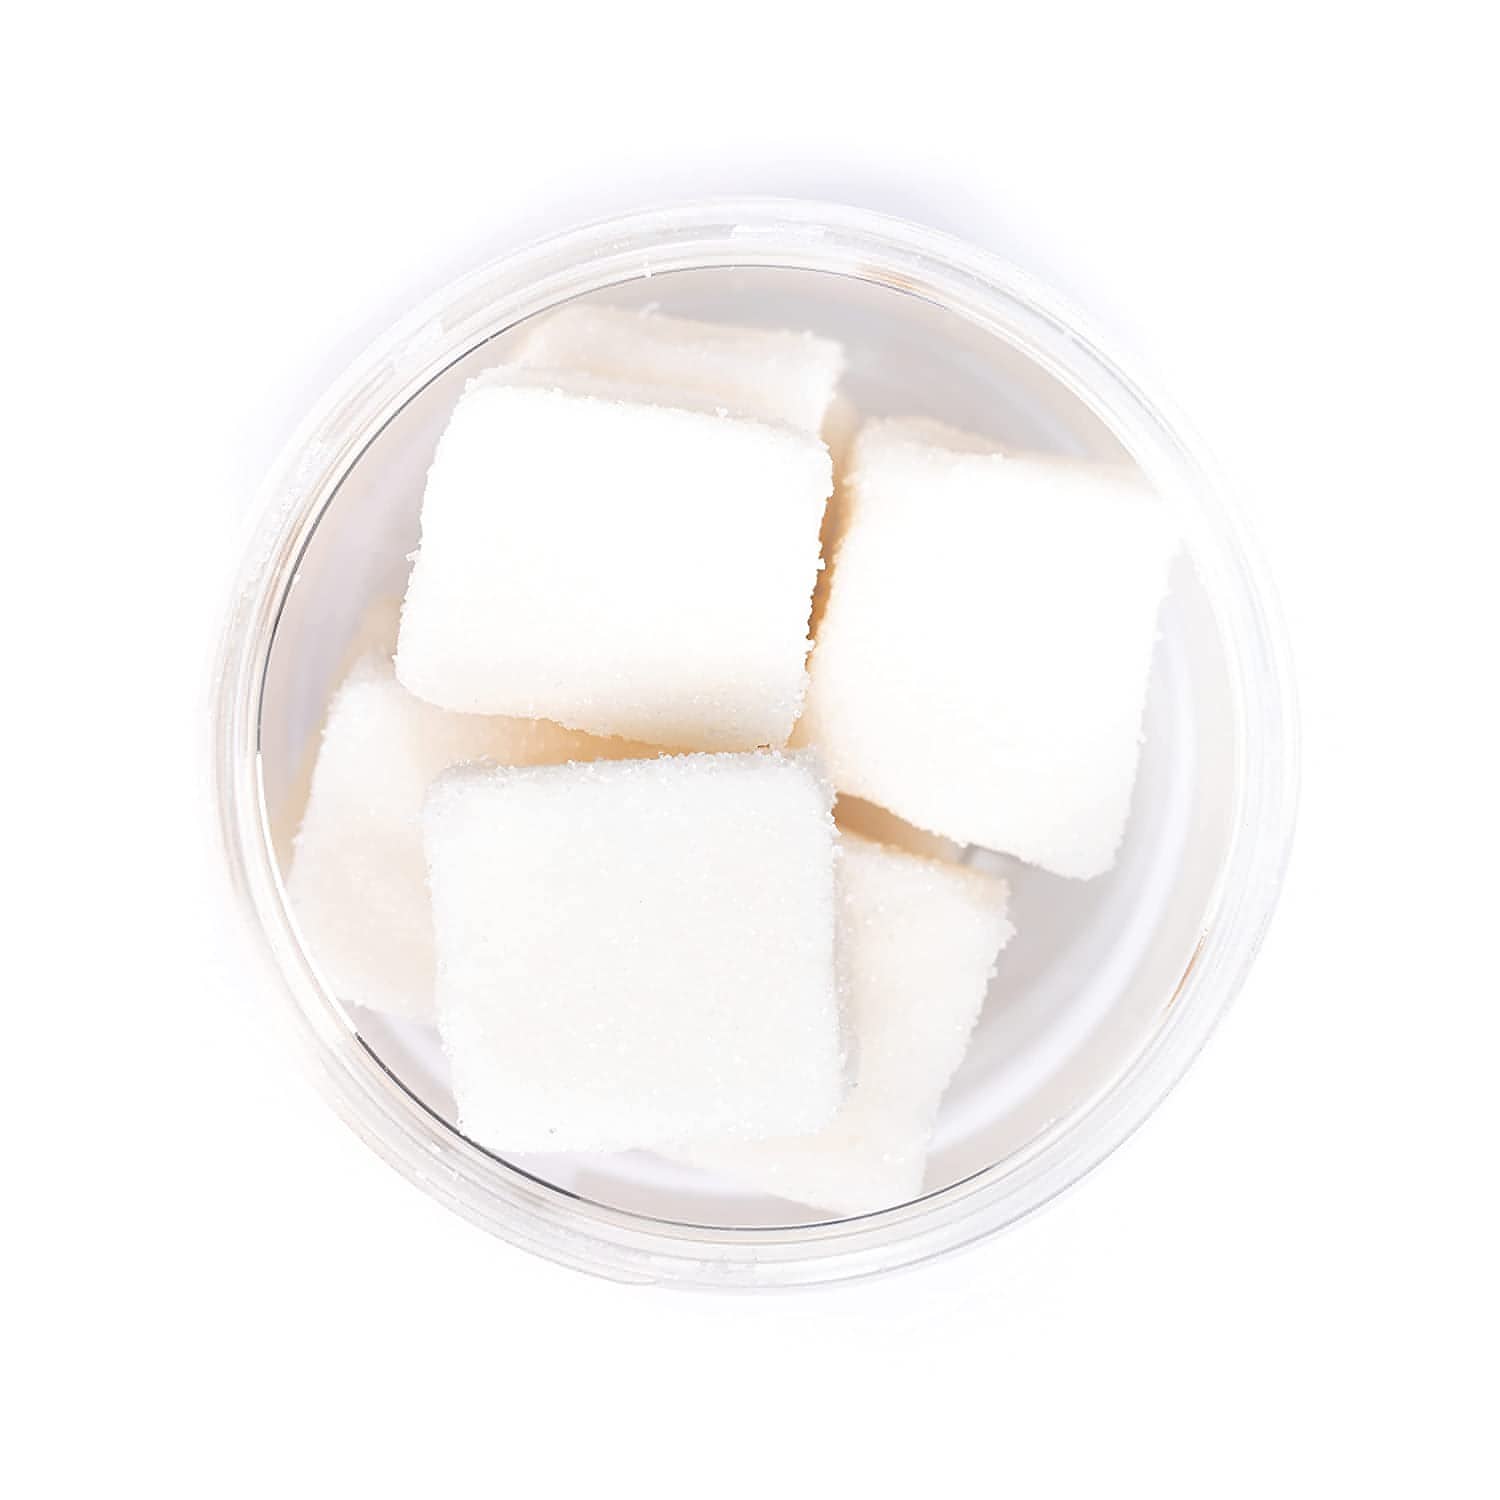 Harper + Ari Coconut Exfoliating Sugar Cubes, 5.3-oz - Brandat Outlet